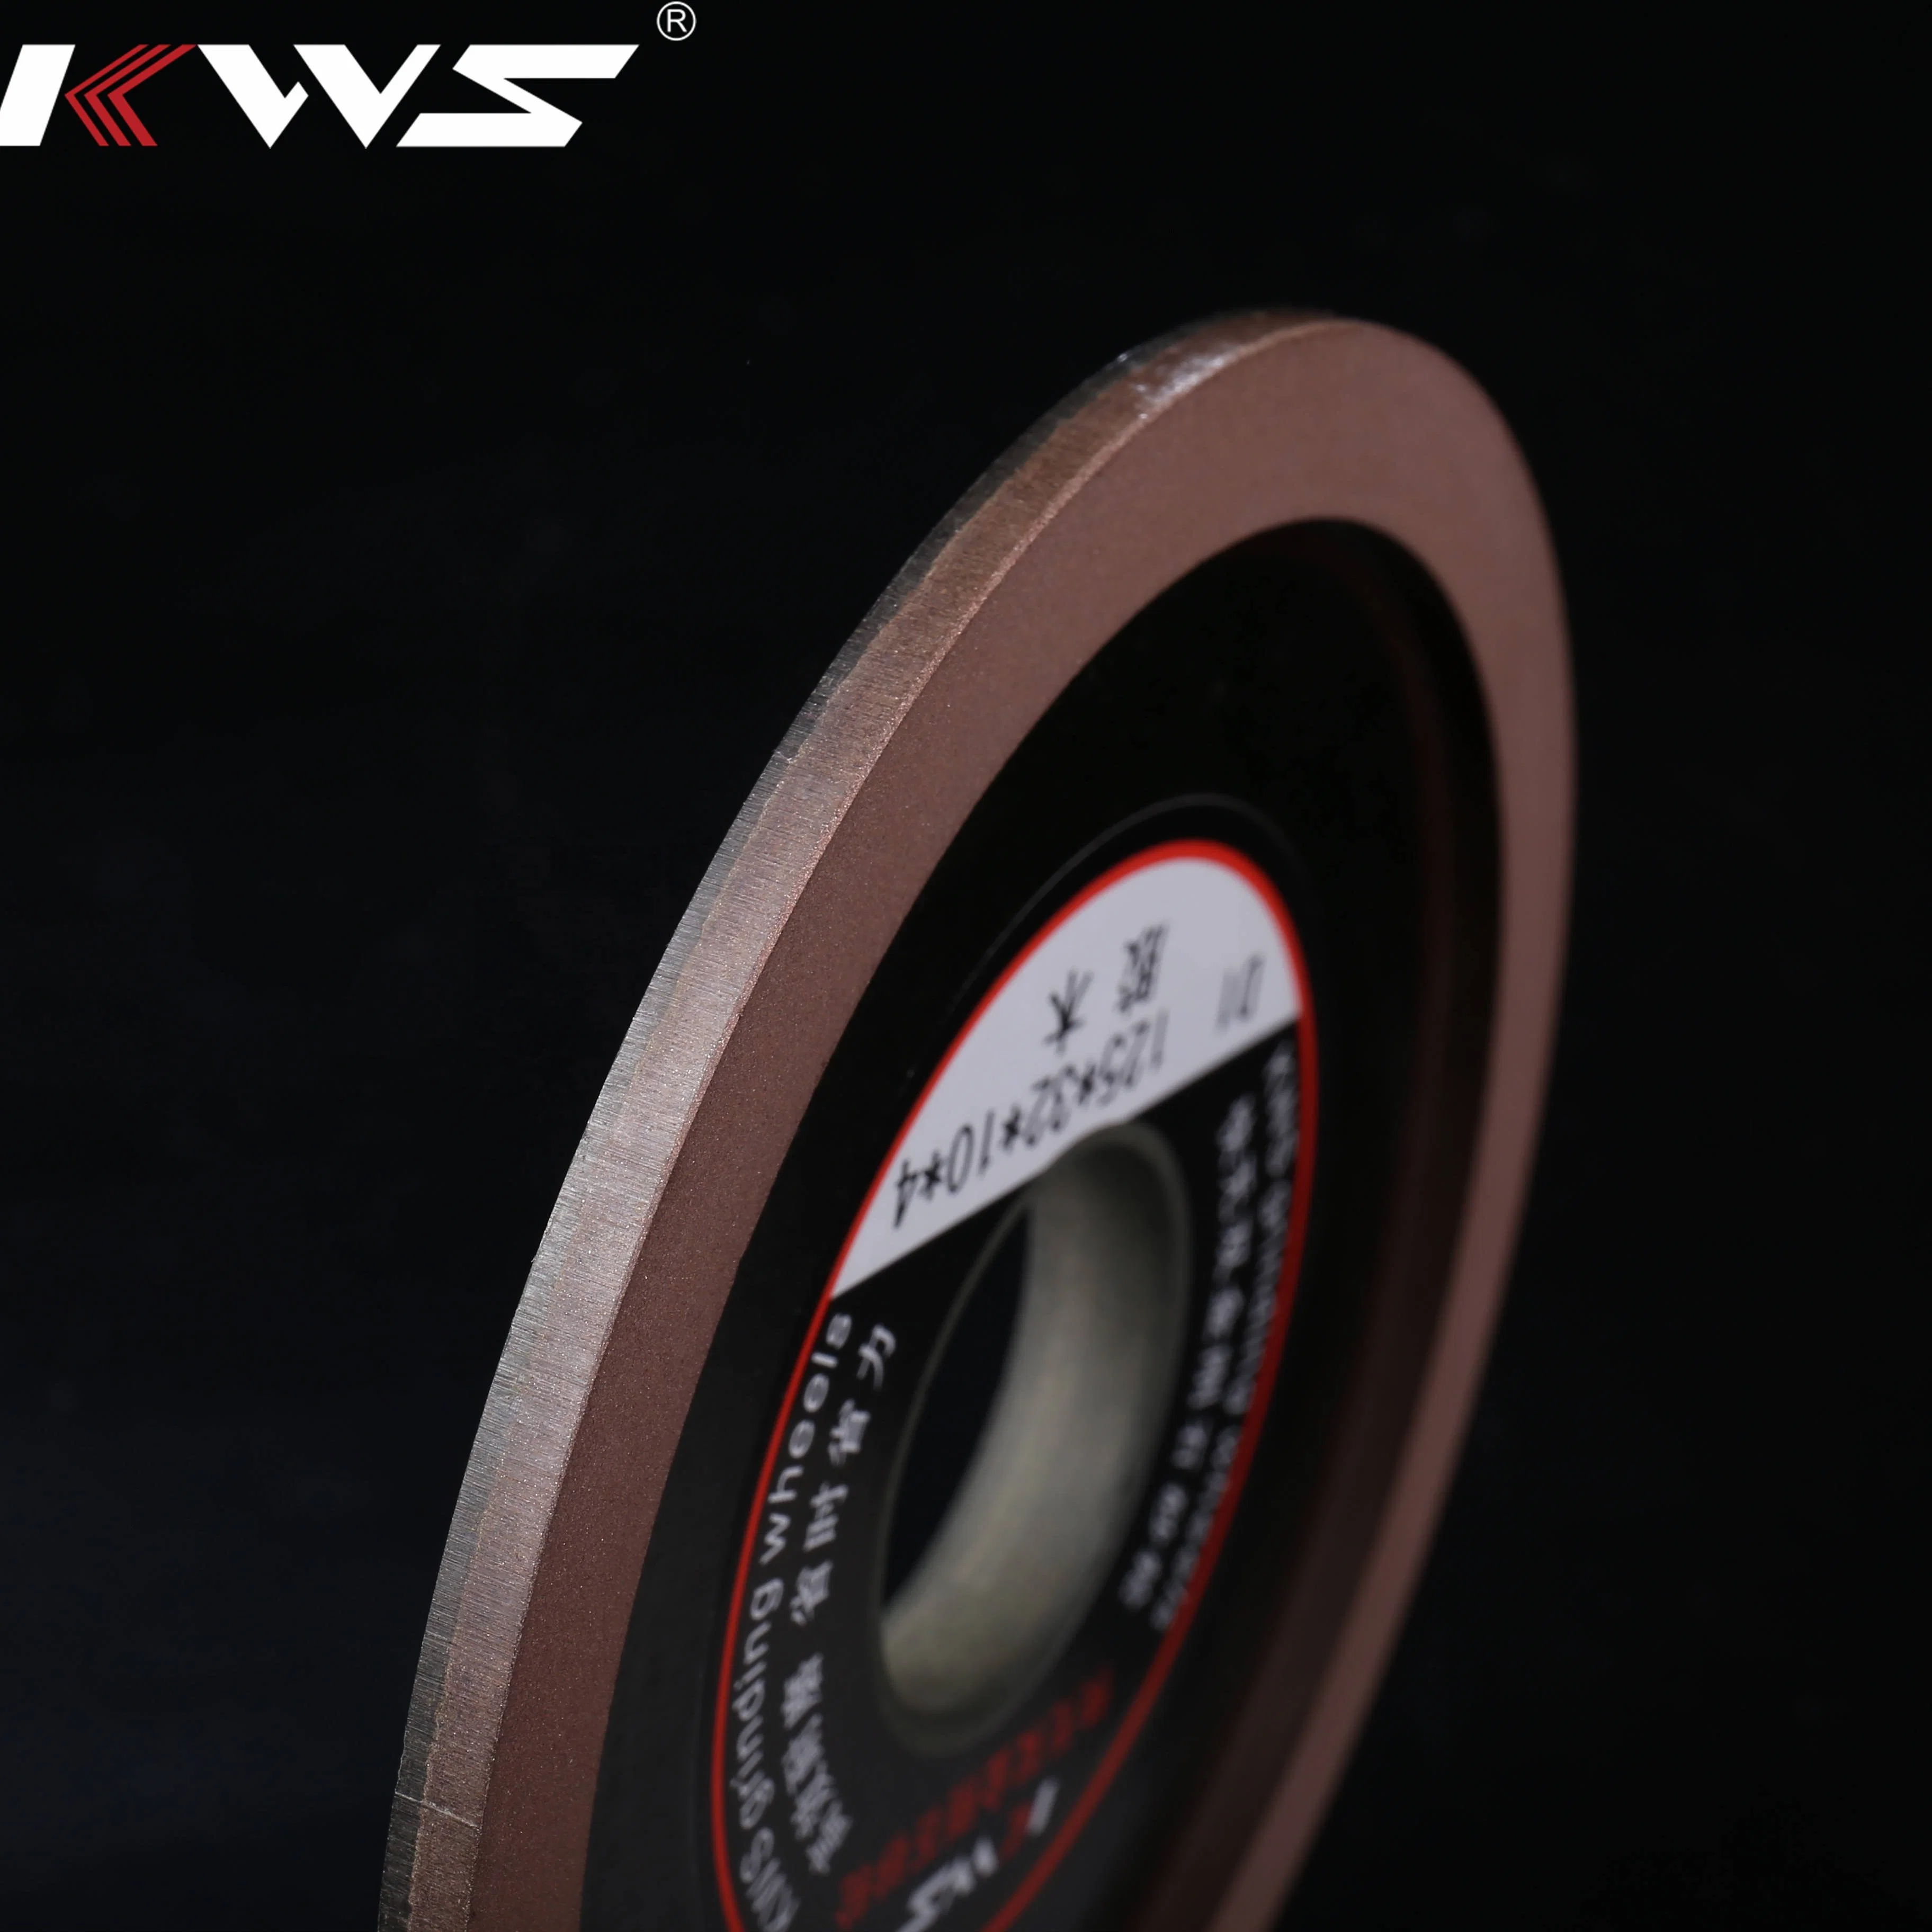 Kws Grinding Wheel for Tungsten Carbide Circular Saw Blade General Purpose Diamond Abrasive Grinding Wheel for Metal